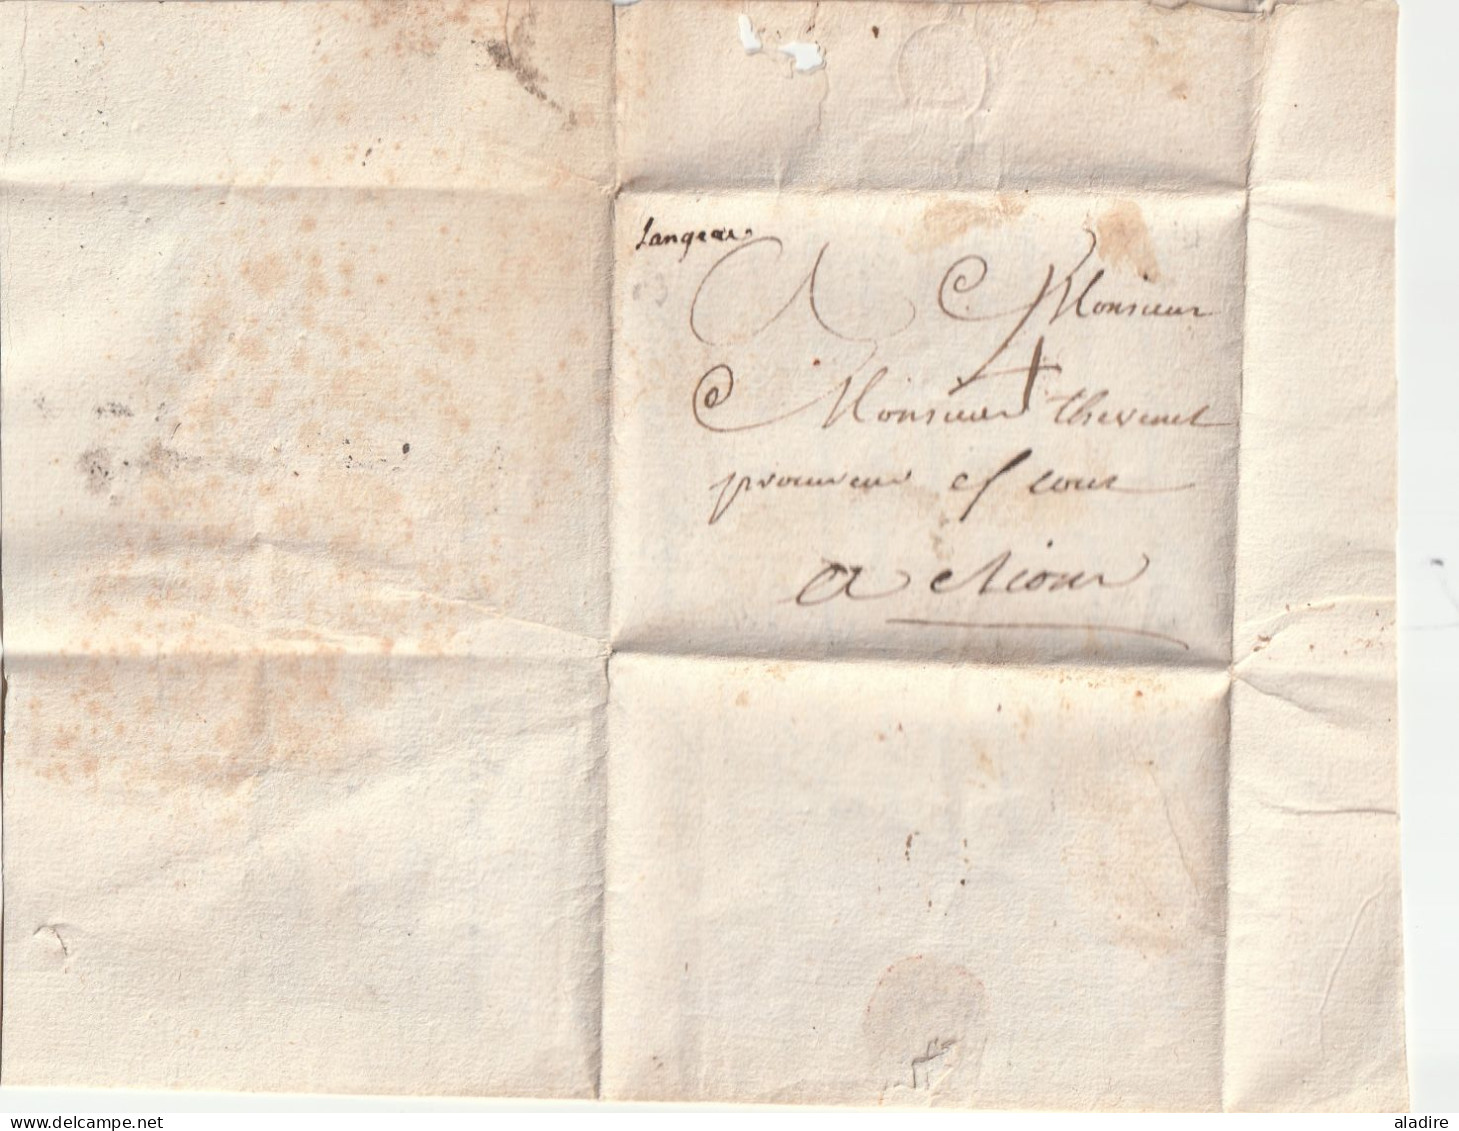 1782 - Marque postale manuscrite LANGEAC sur lettre de CHANTEUGES, Haute Loire vers RIOM, Puy de Dôme